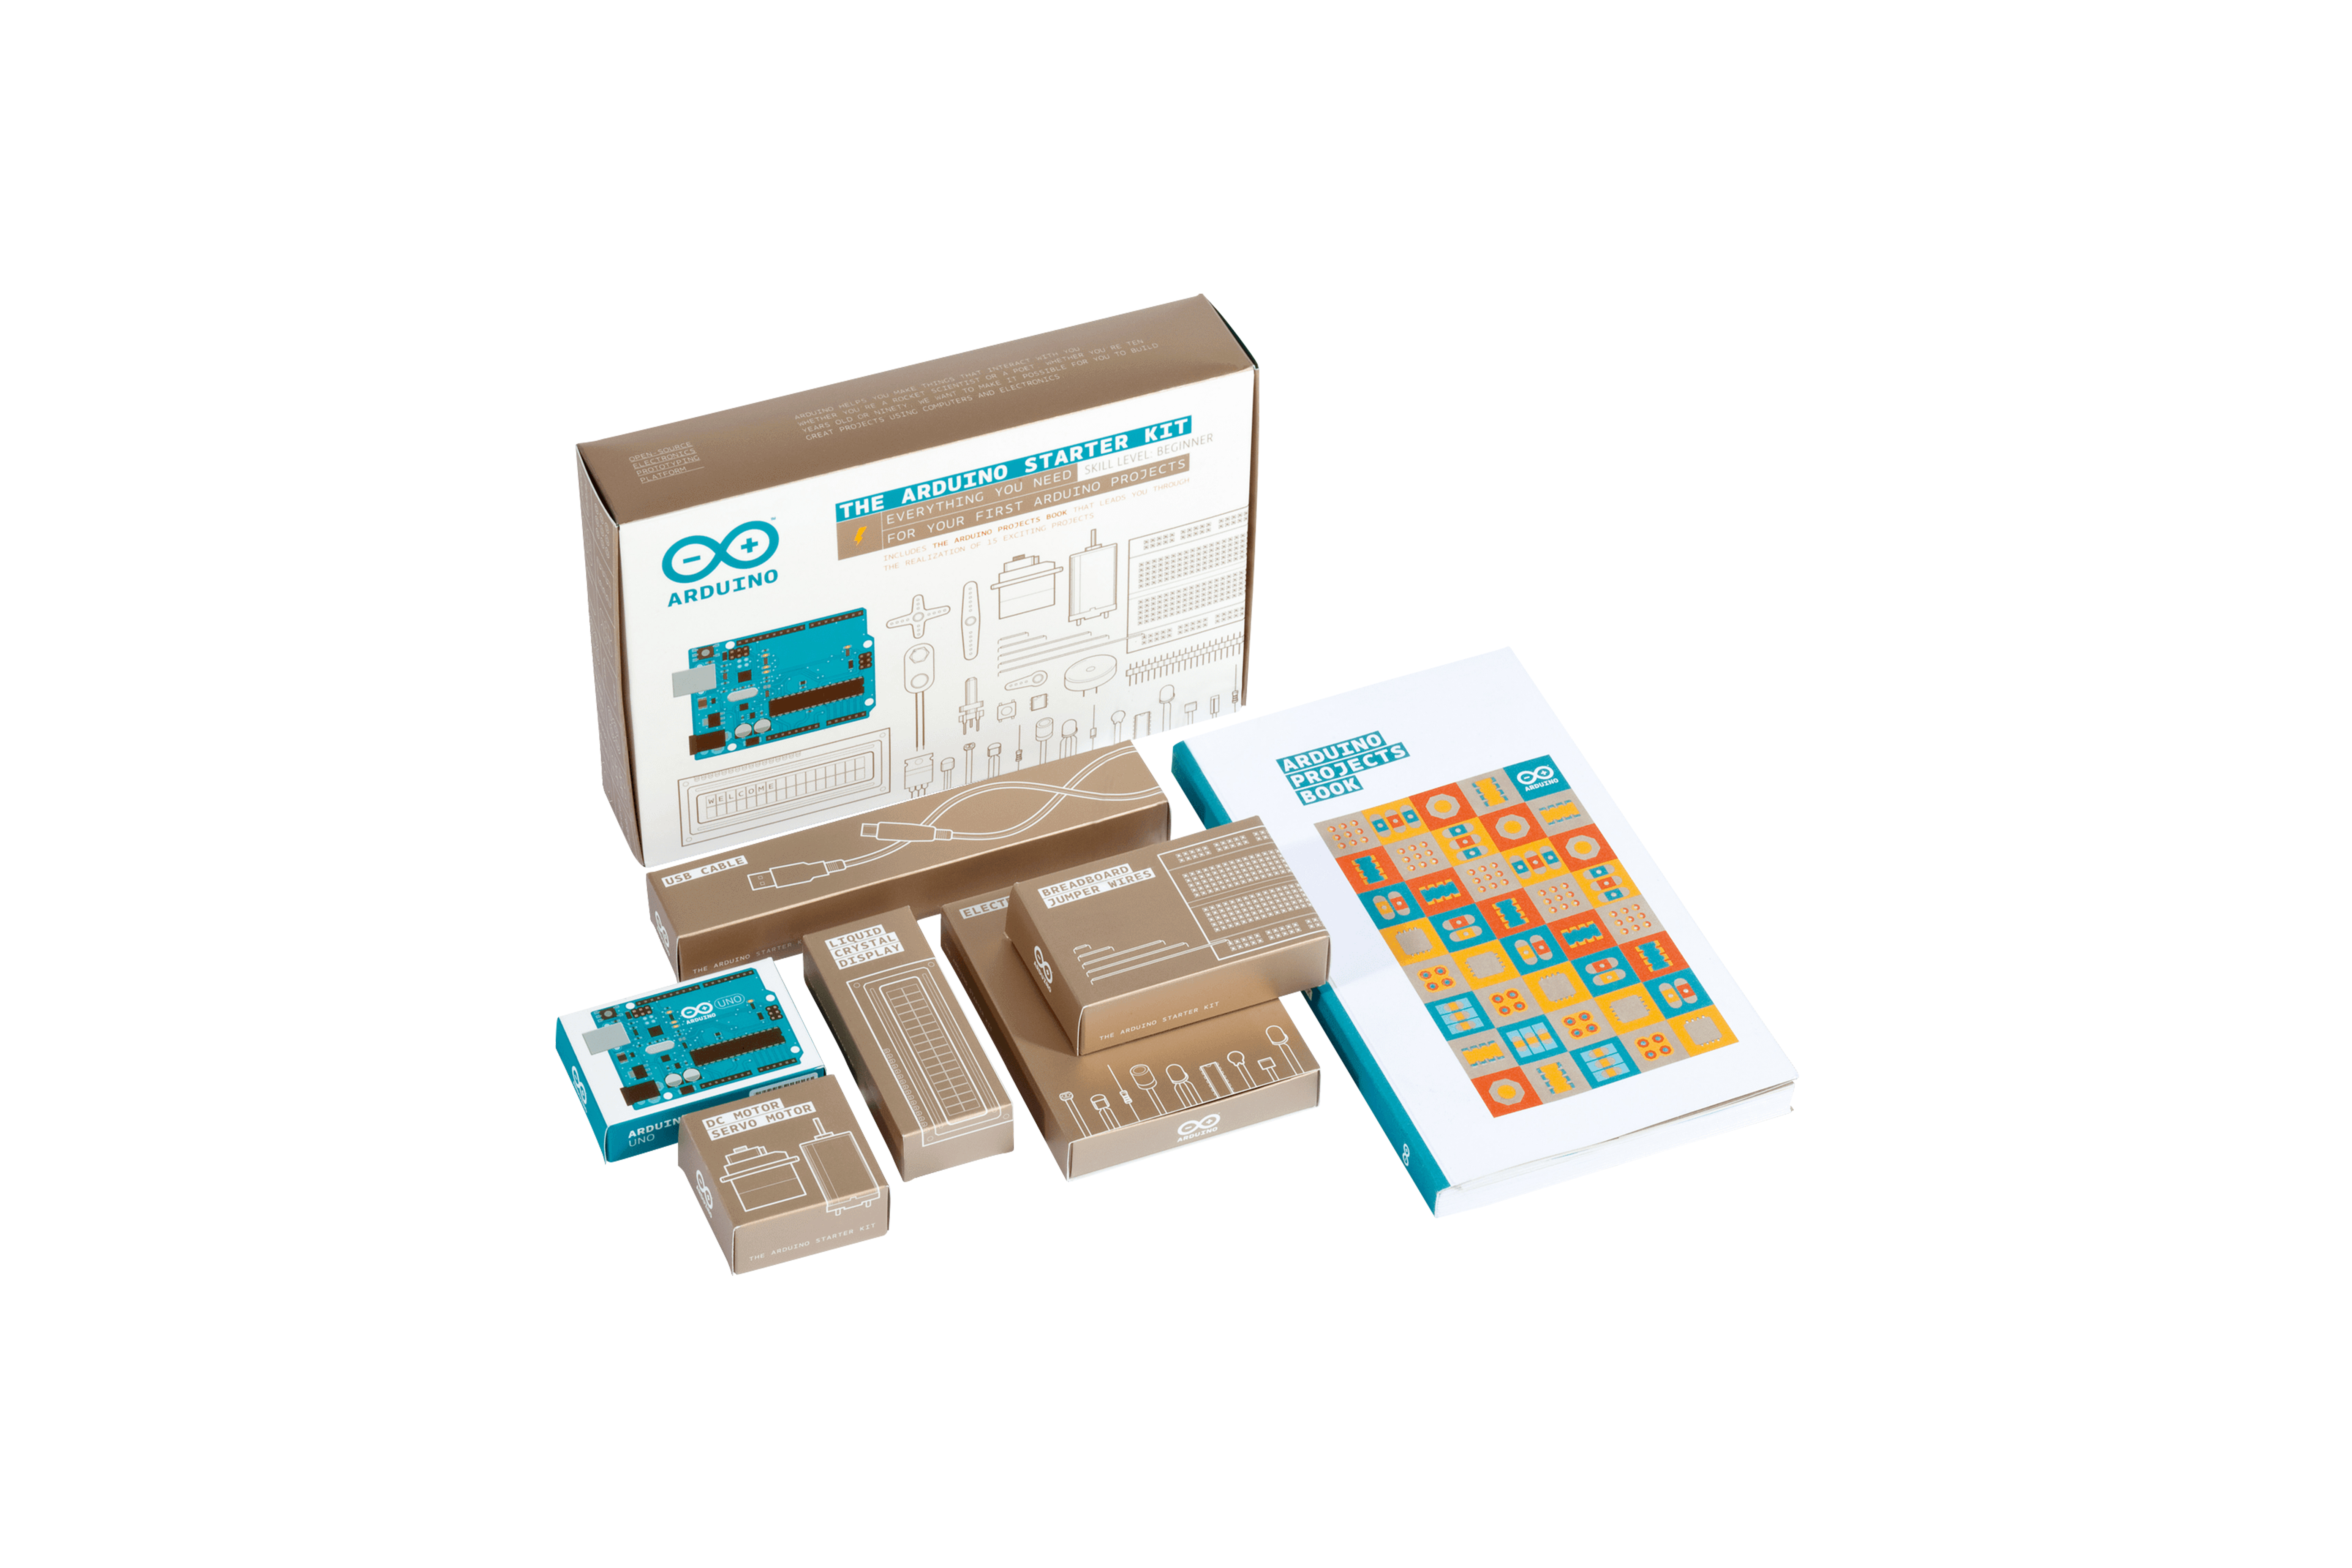 Kit de démarrage Arduino avec carte UNO